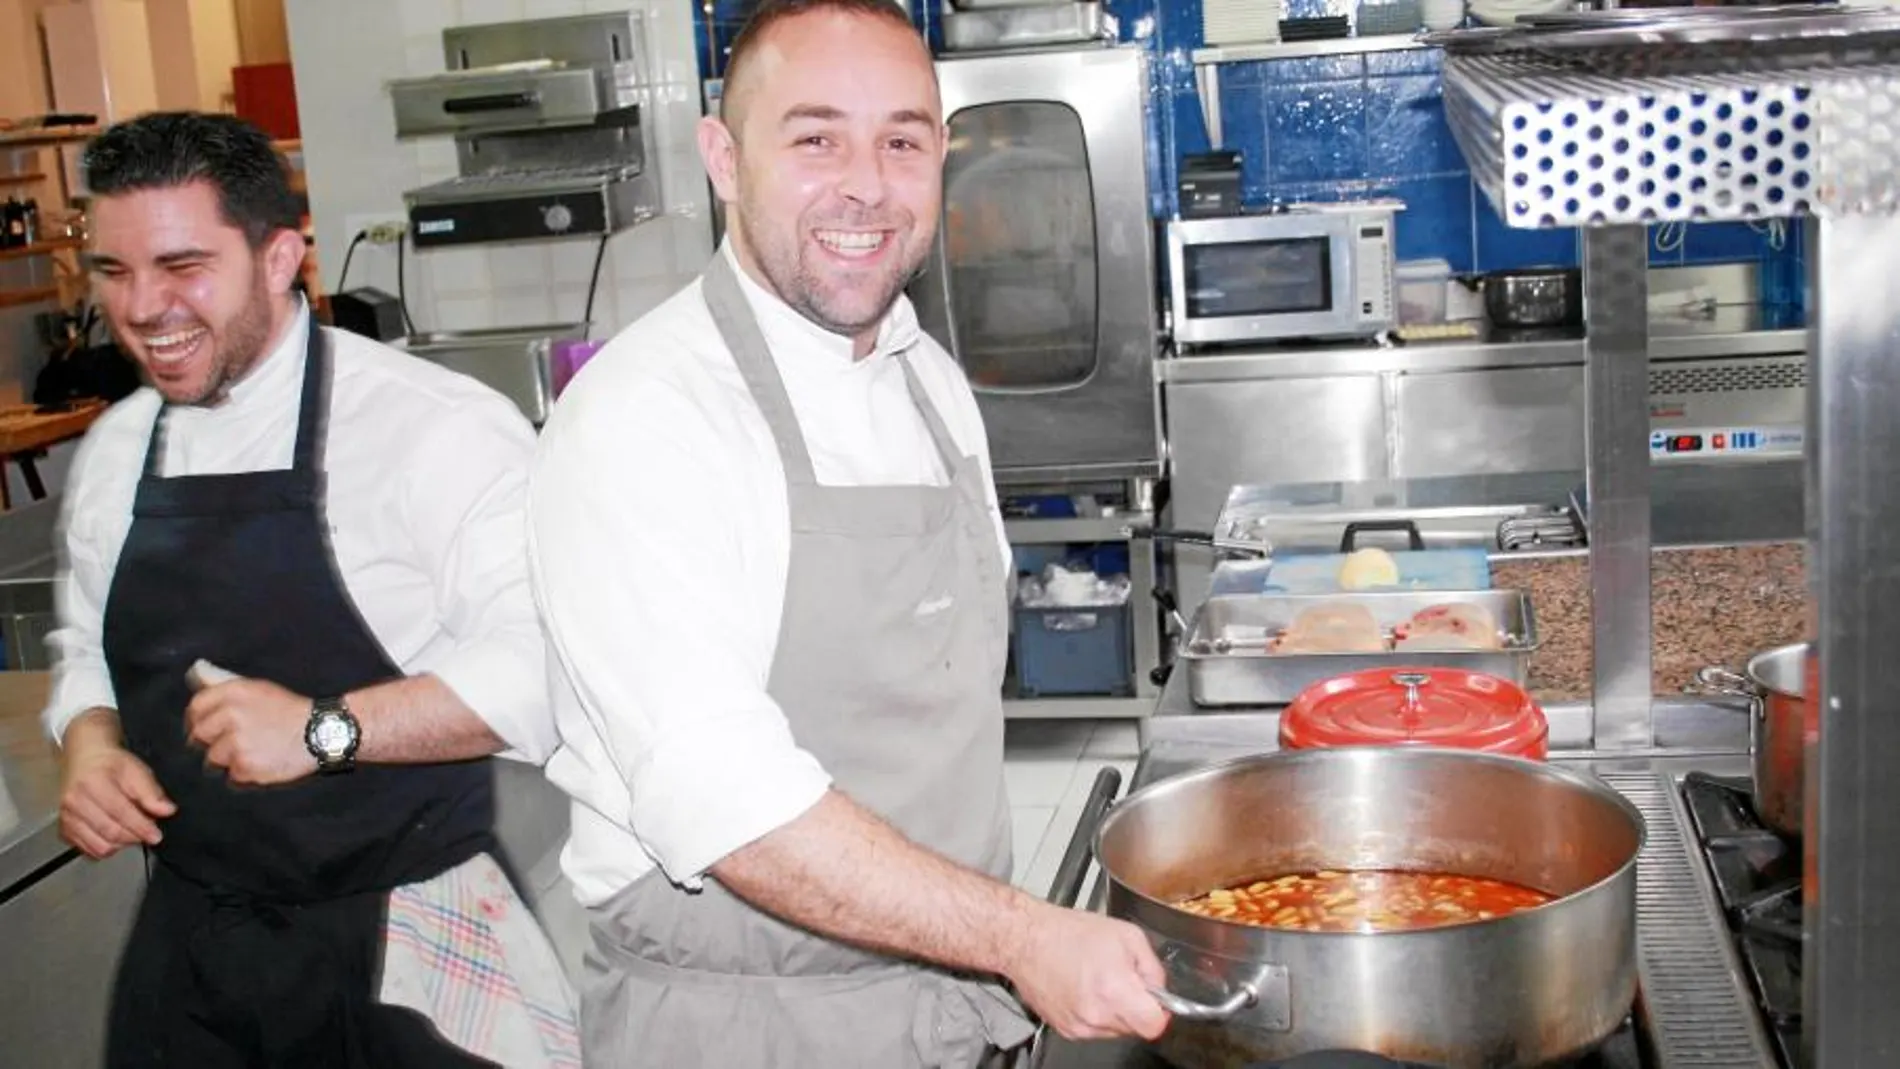 El chef asturiano Ricardo Sotres a la derecha, siempre tiene a mano una olla exprés para sus guisos y caldos